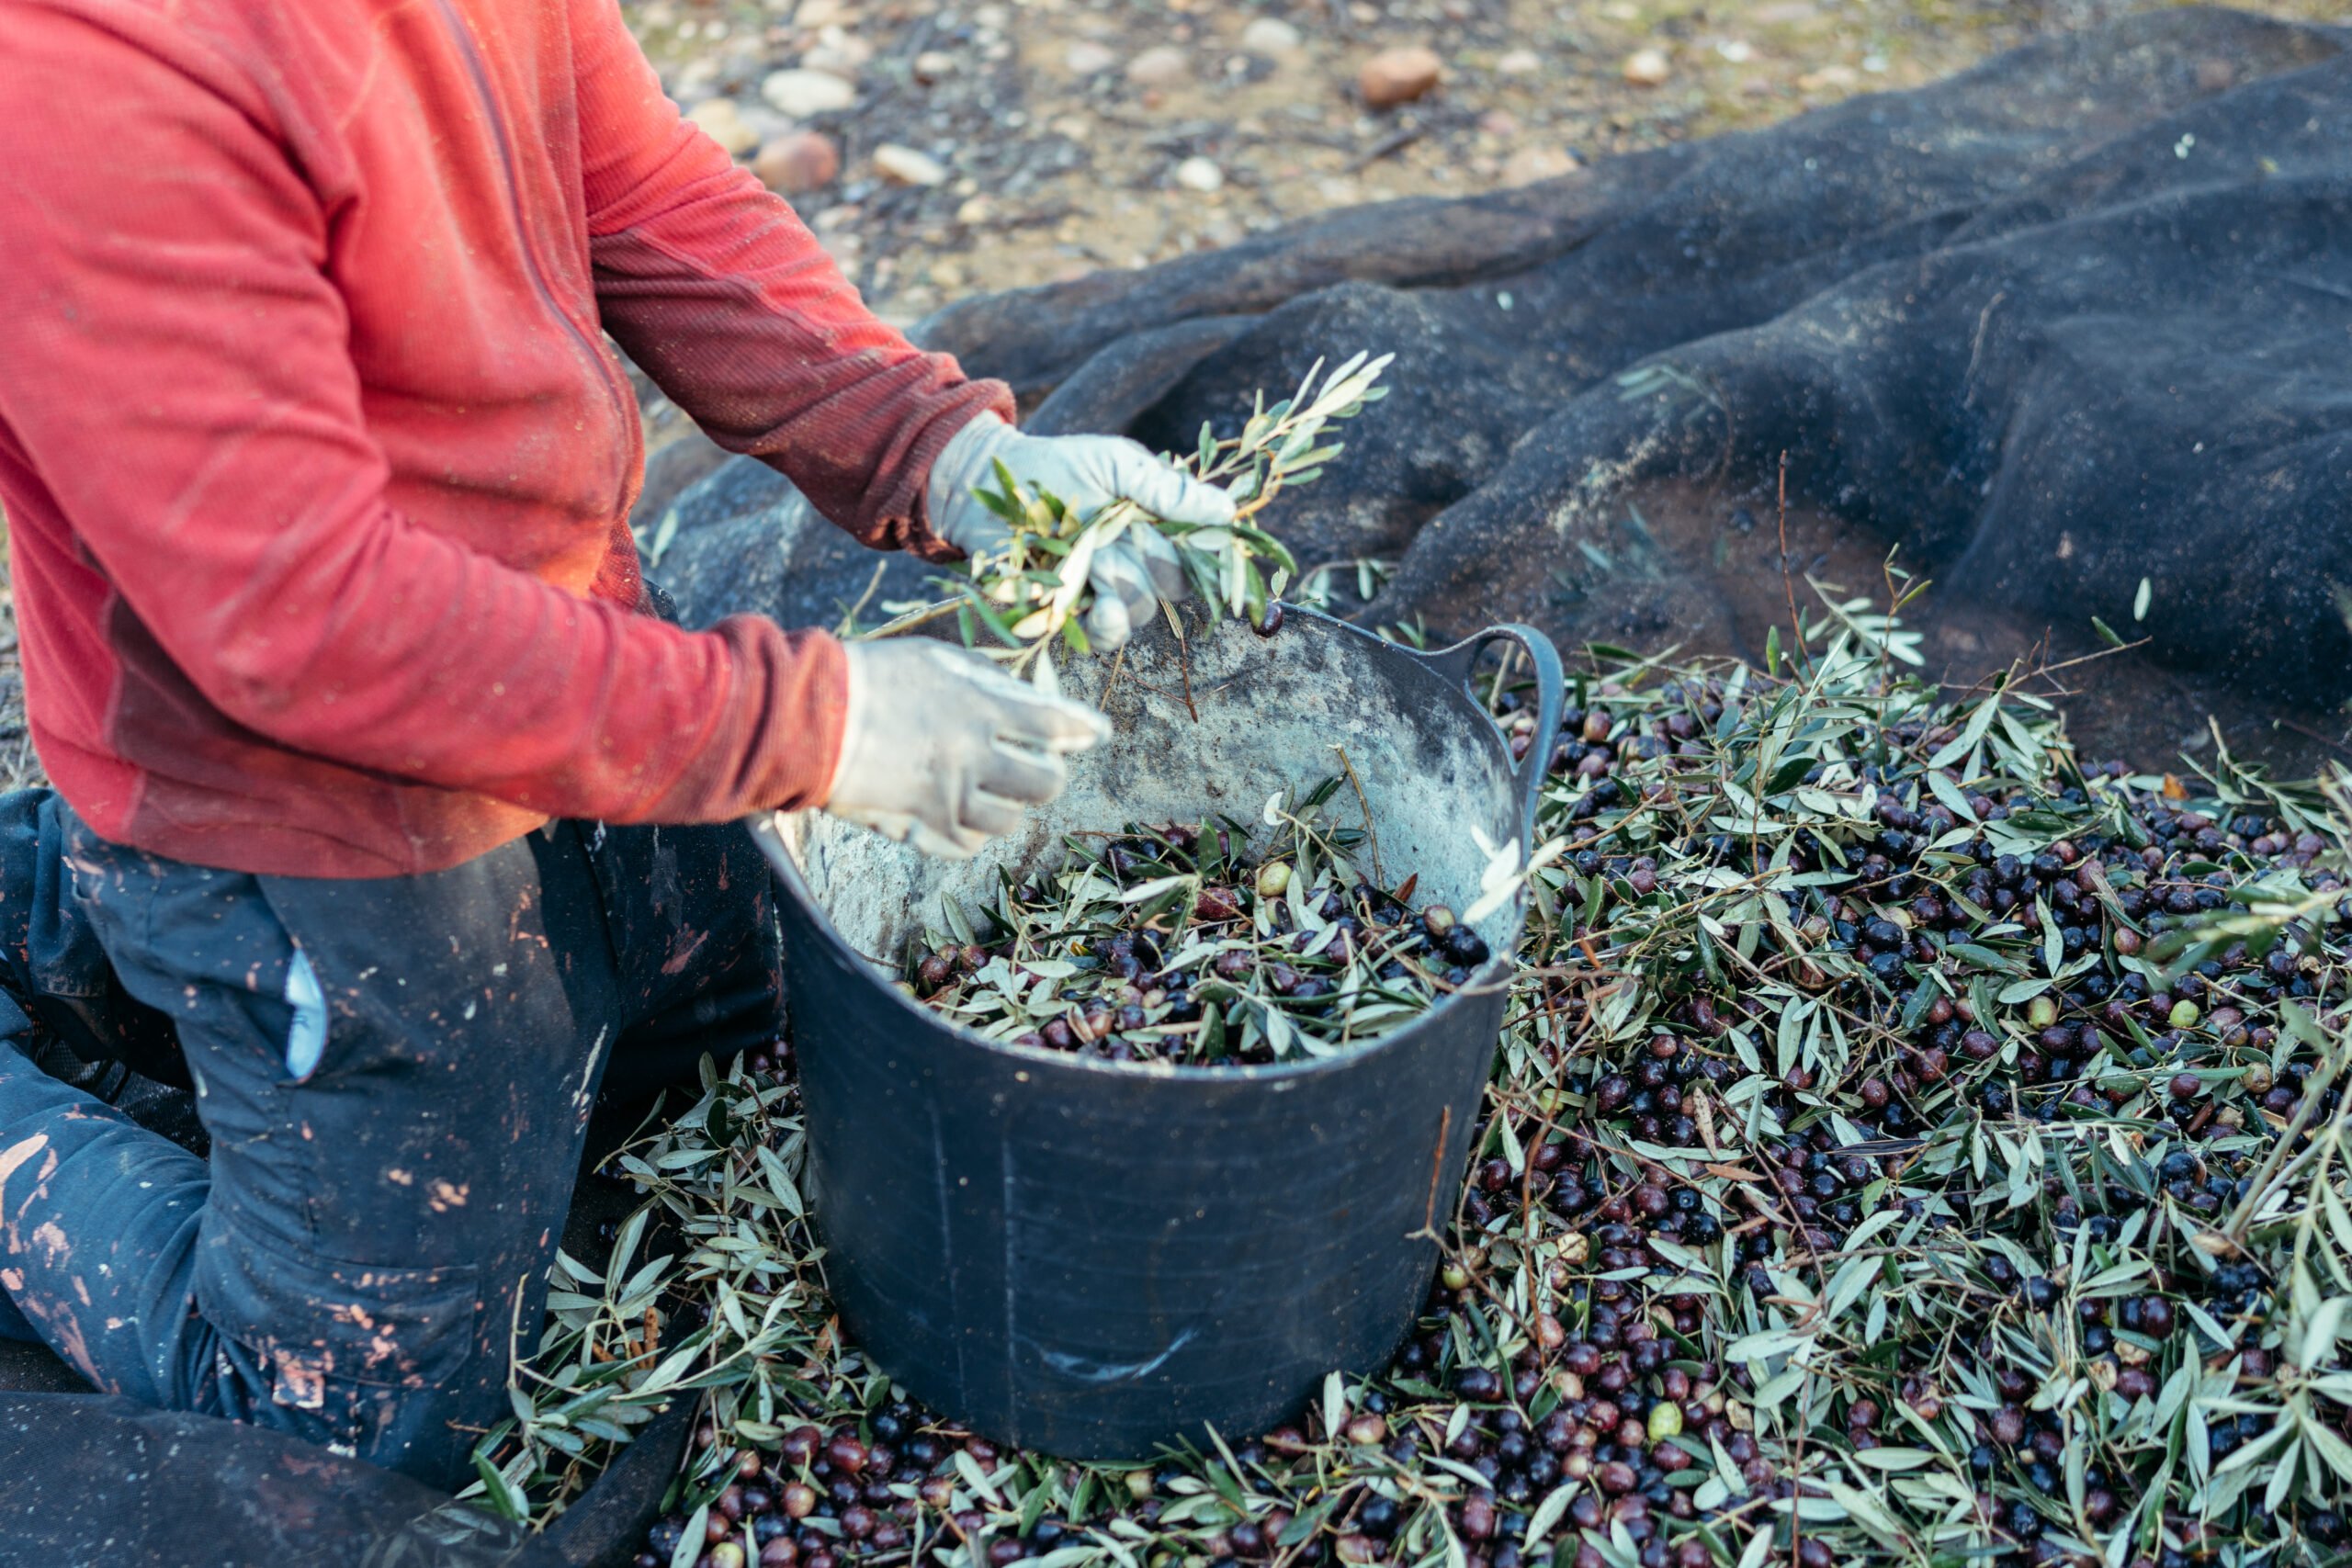 Arbeiter auf den Knien, der die Oliven von den Zweigen trennt und sie in einen Korb wirft